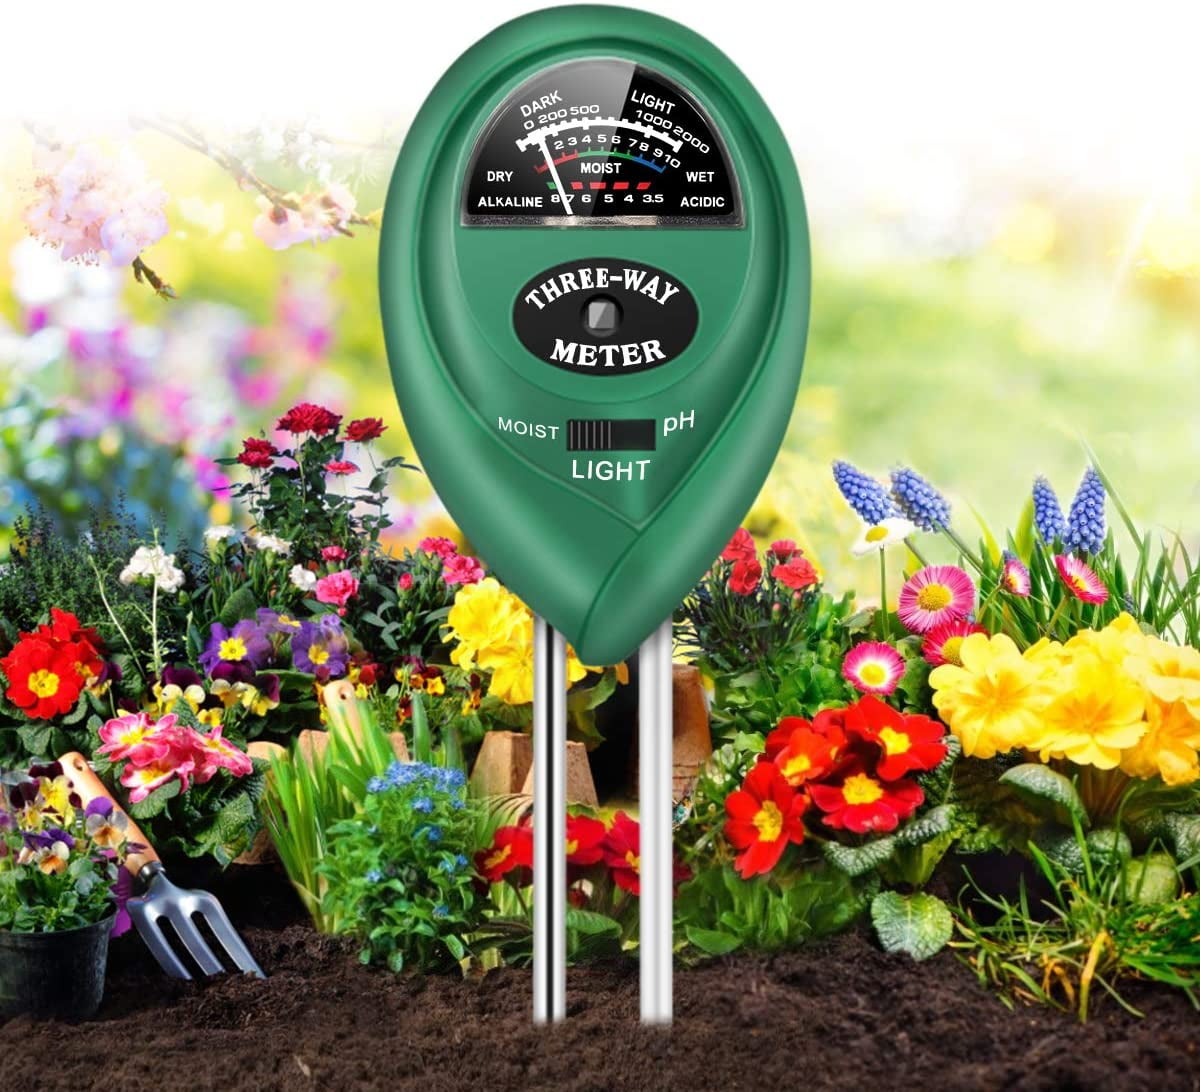 Soil Moisture Meter & Ph Level Tester for Plants Crops Flowers Vegetable Garden for sale online 